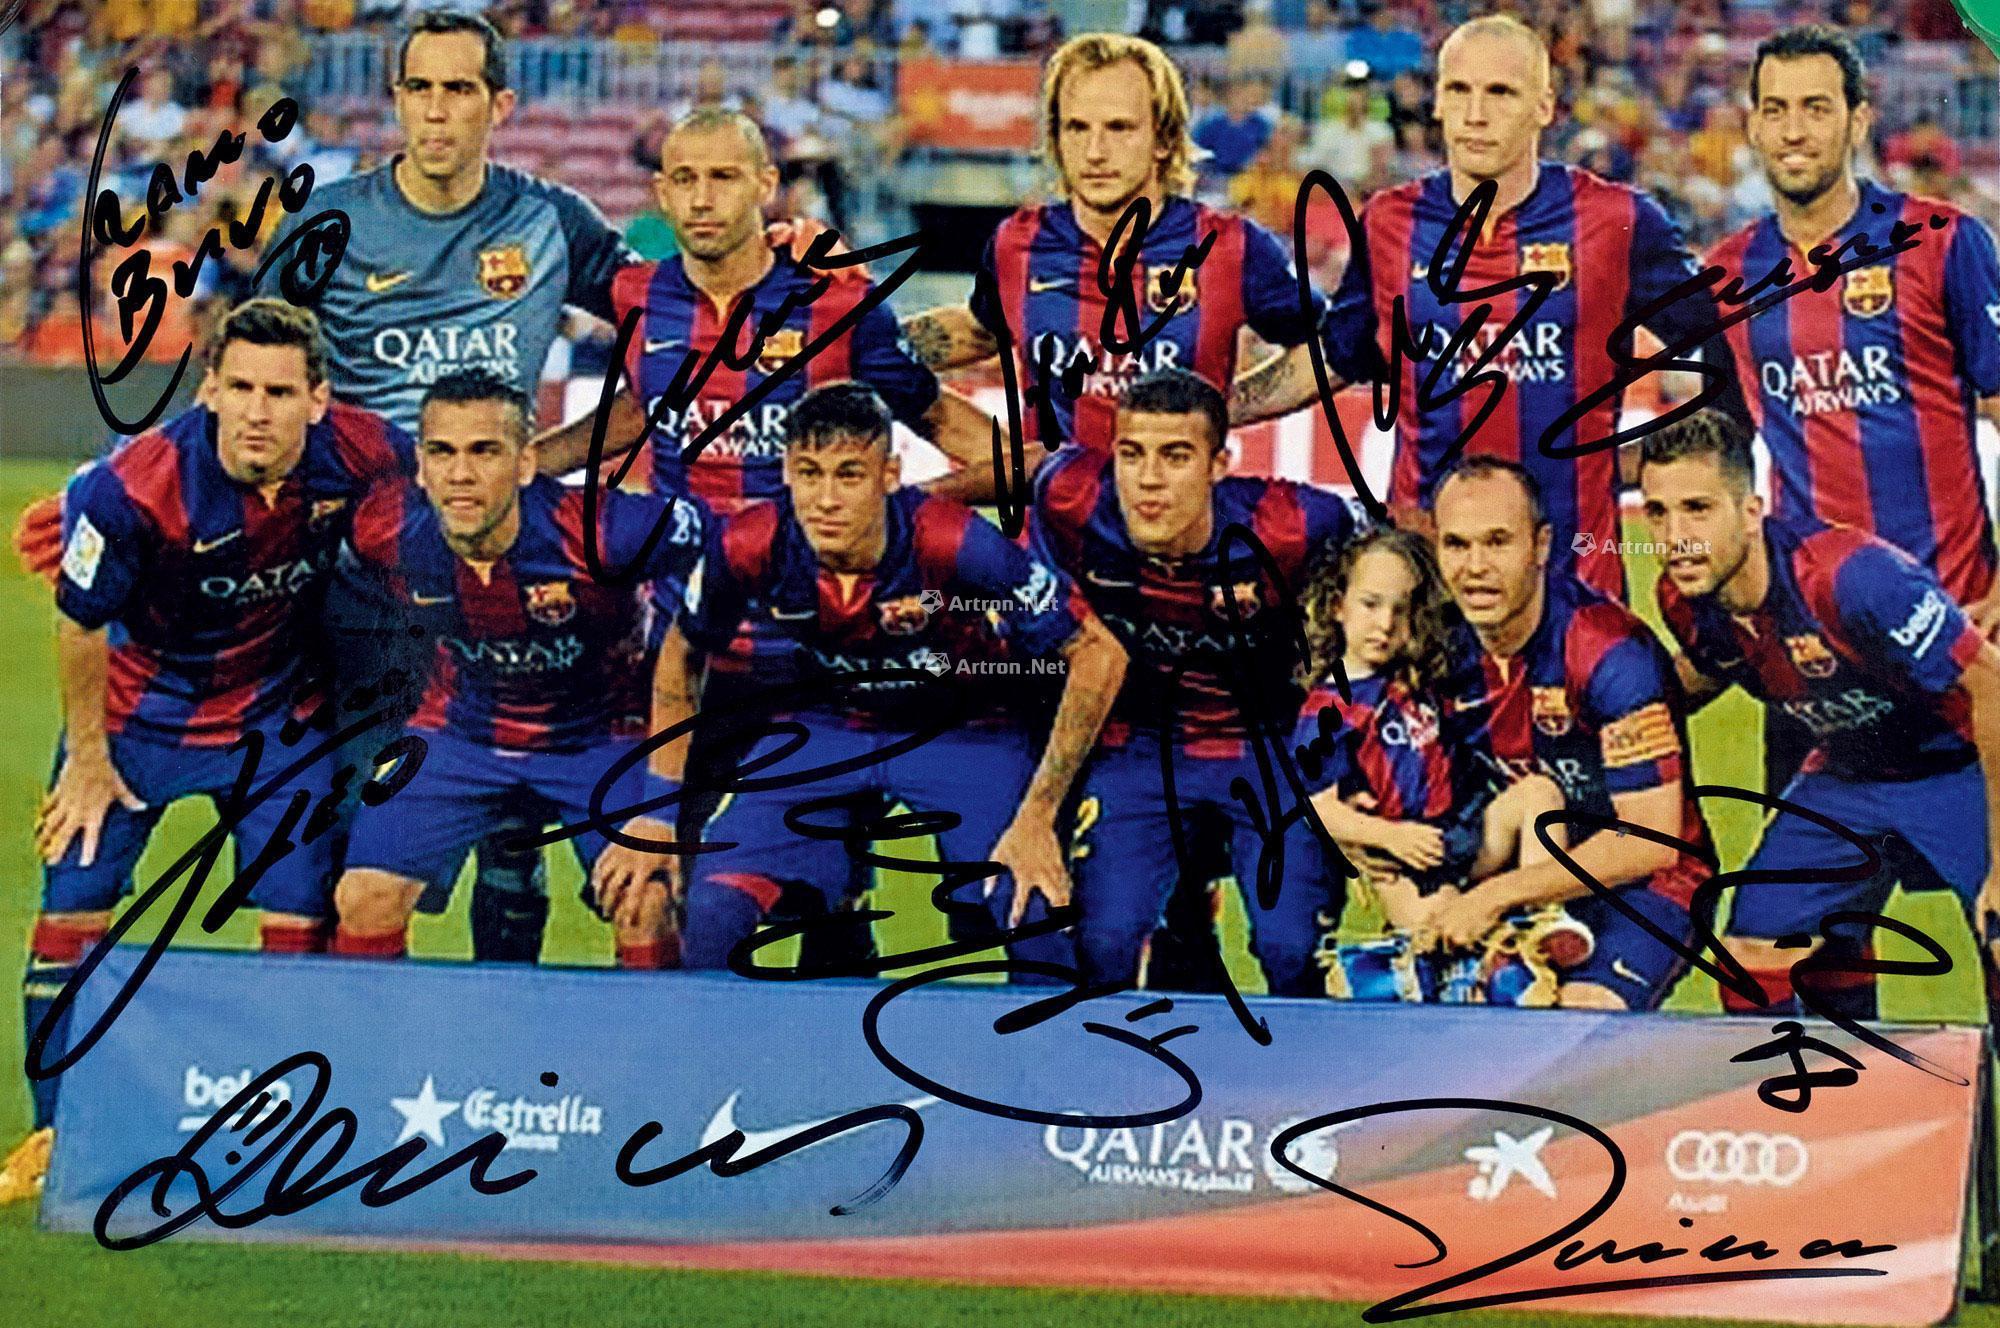 0674 世界著名足球俱乐部巴塞罗那队(2014/2015年度)11位足球运动员